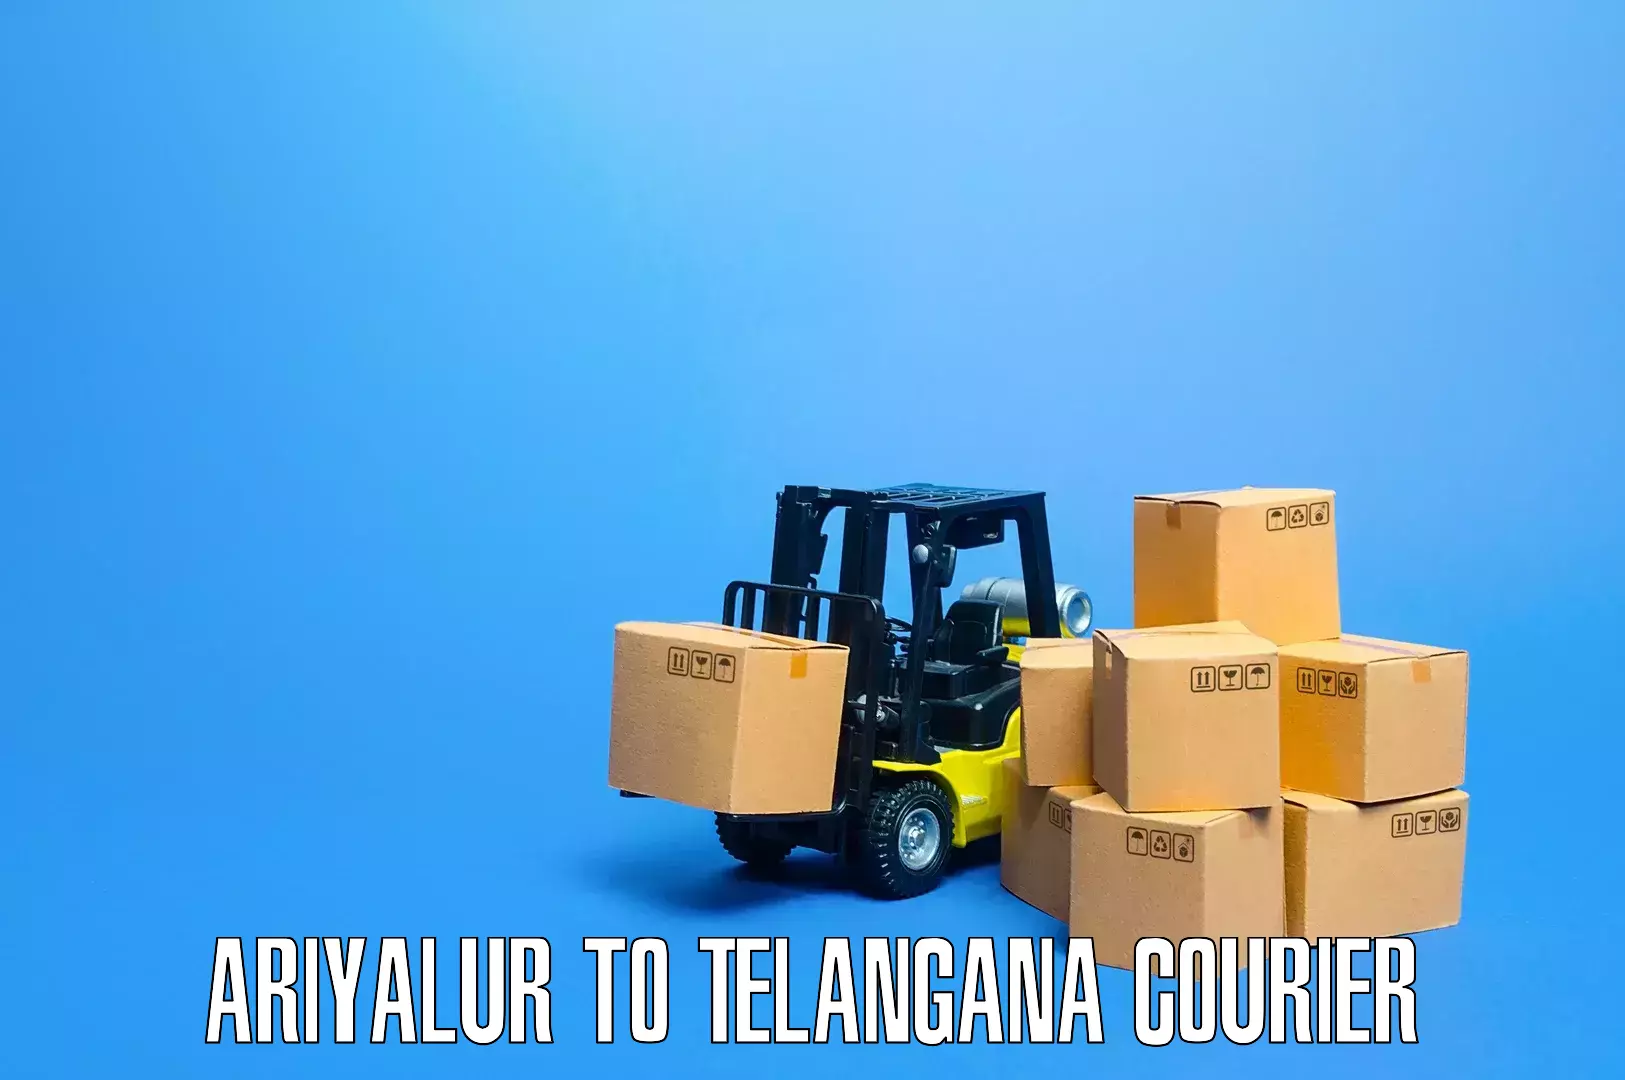 Furniture relocation experts Ariyalur to Telangana